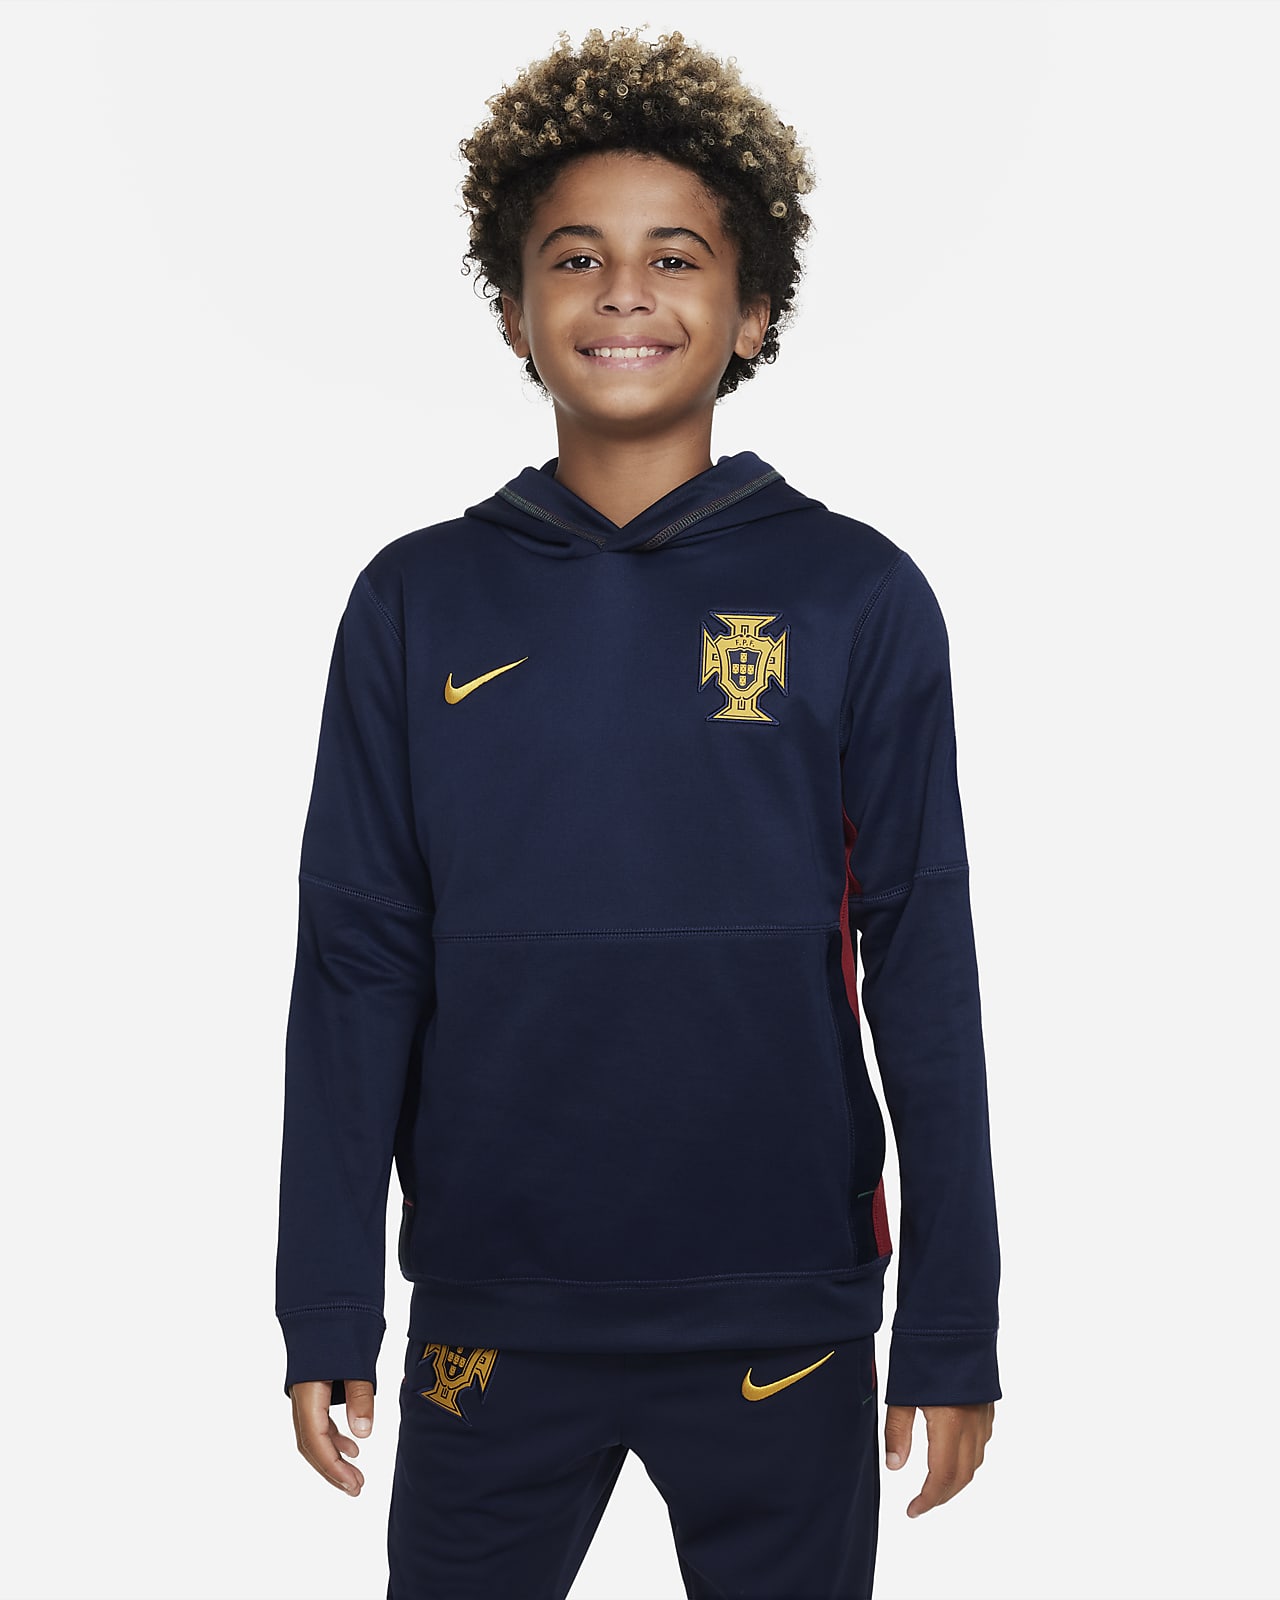 Ποδοσφαιρικό φούτερ με κουκούλα Nike Πορτογαλία για μεγάλα παιδιά